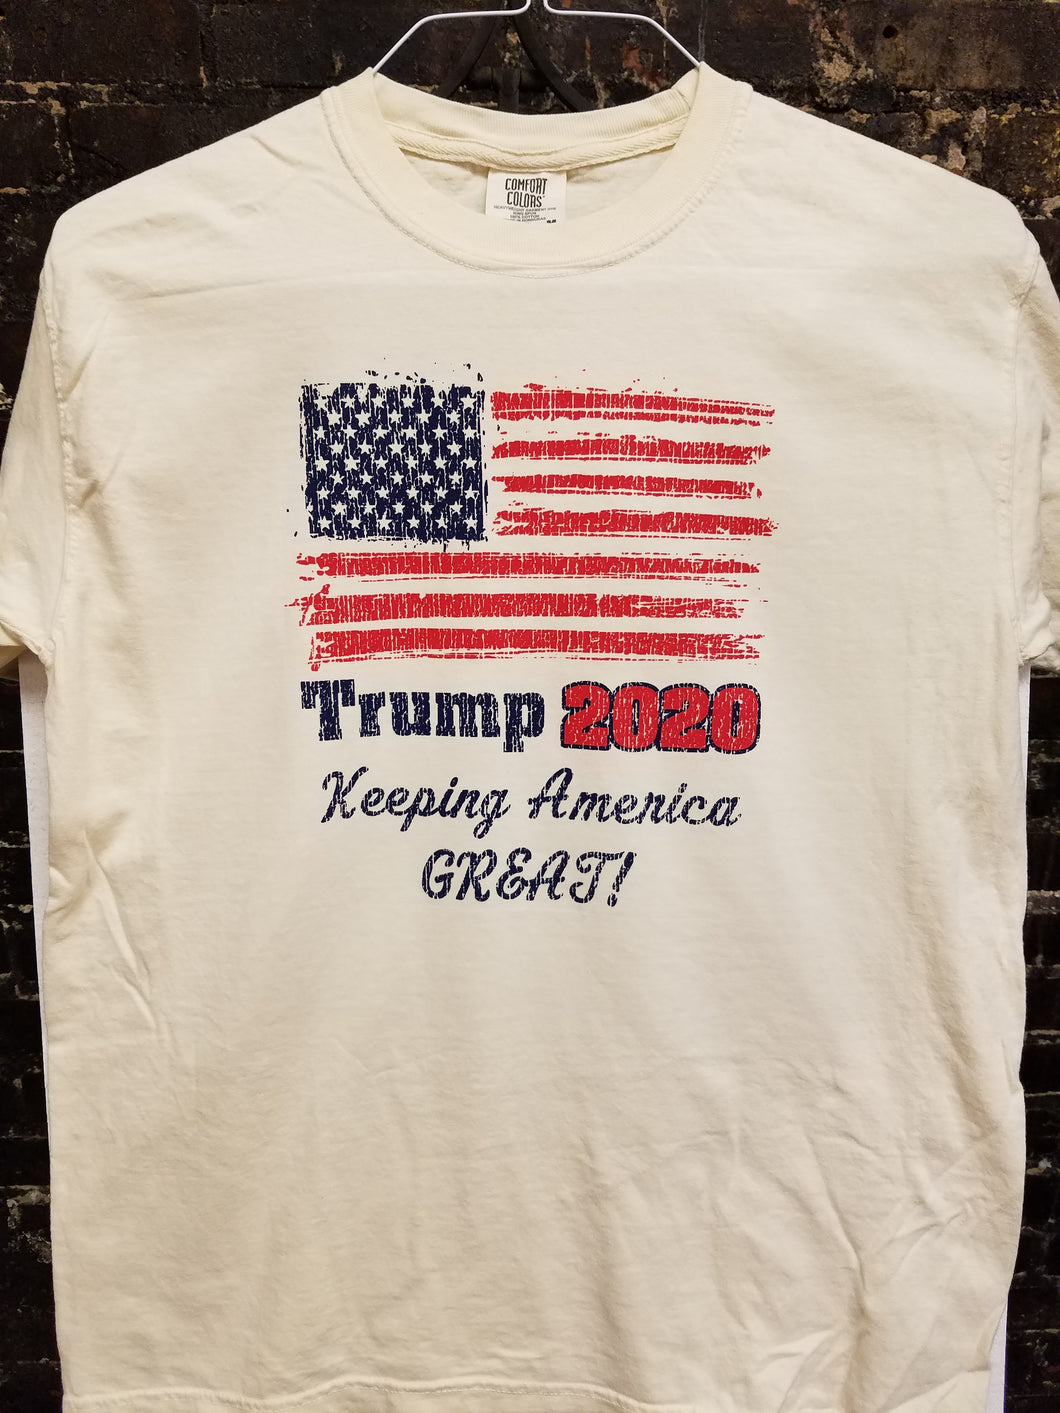 Patriotic - Trump 2020